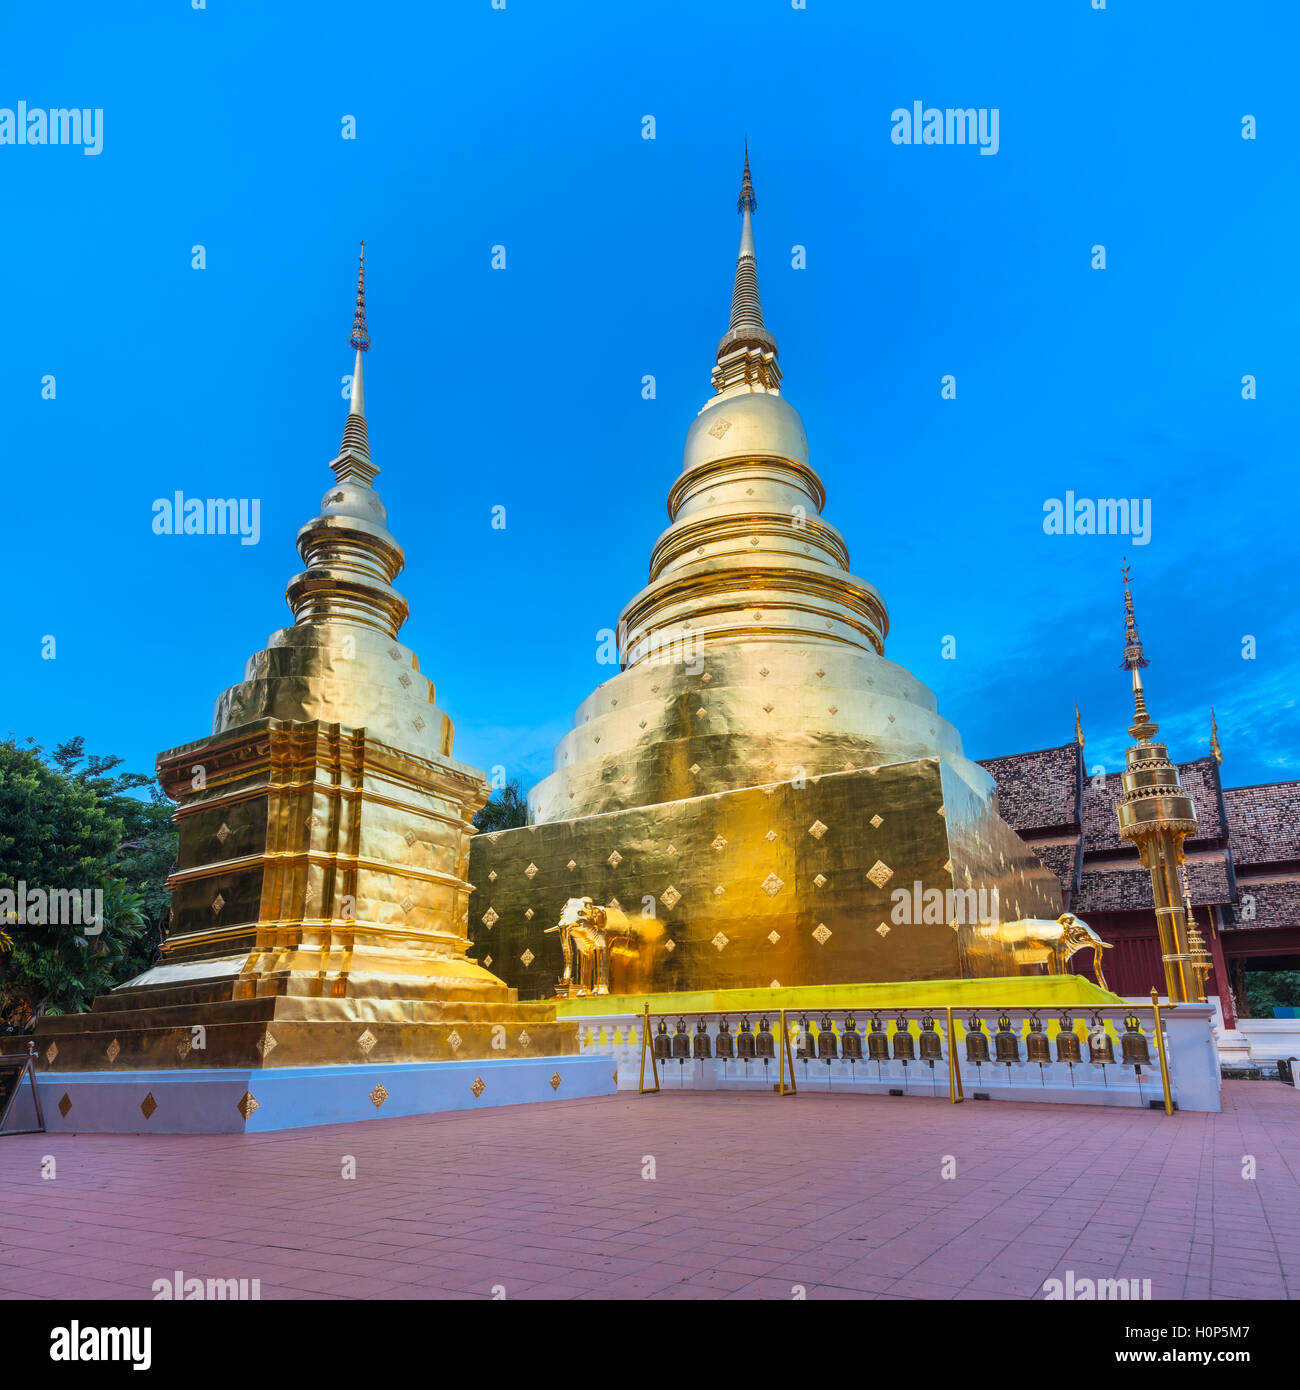 Ver el atardecer de la estupa dorada del templo Wat Phra Singh, el templo más venerado en Chiang Mai, Tailandia. Foto de stock